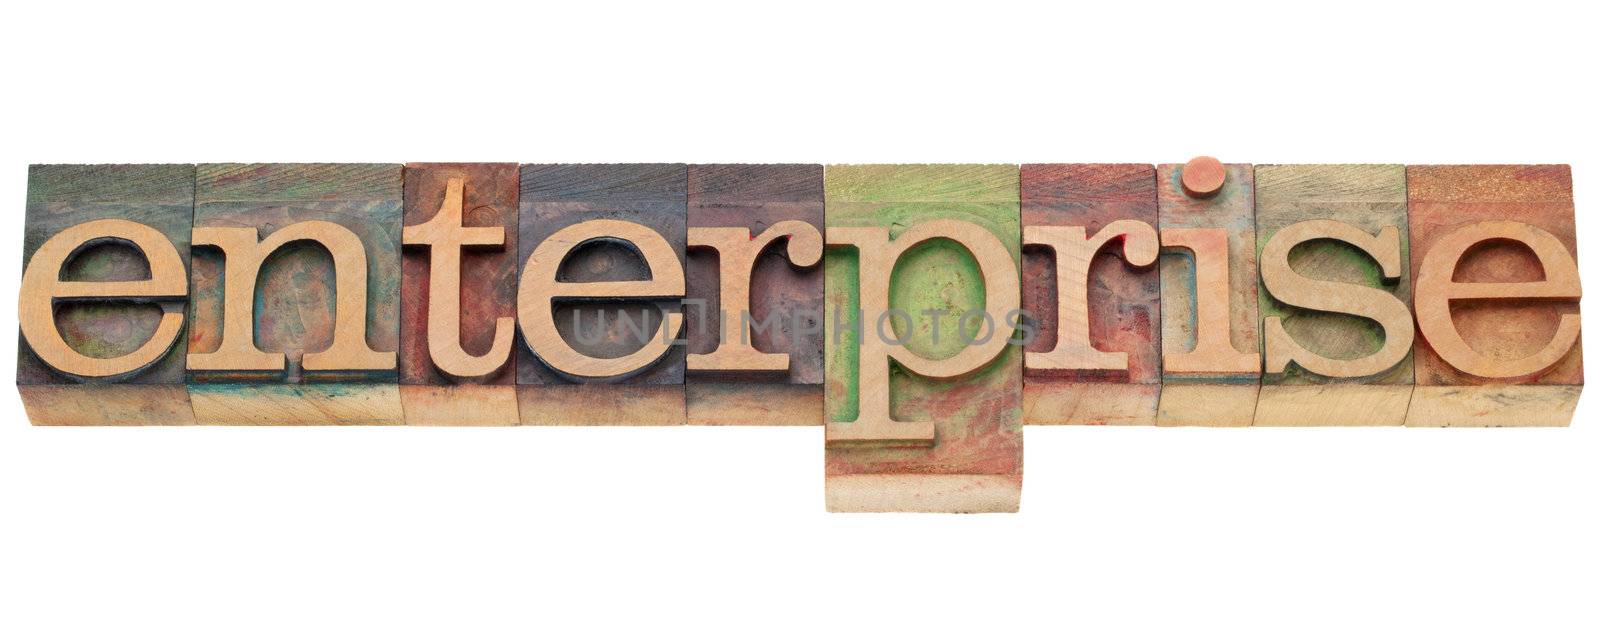 enterprise word in letterpress type by PixelsAway